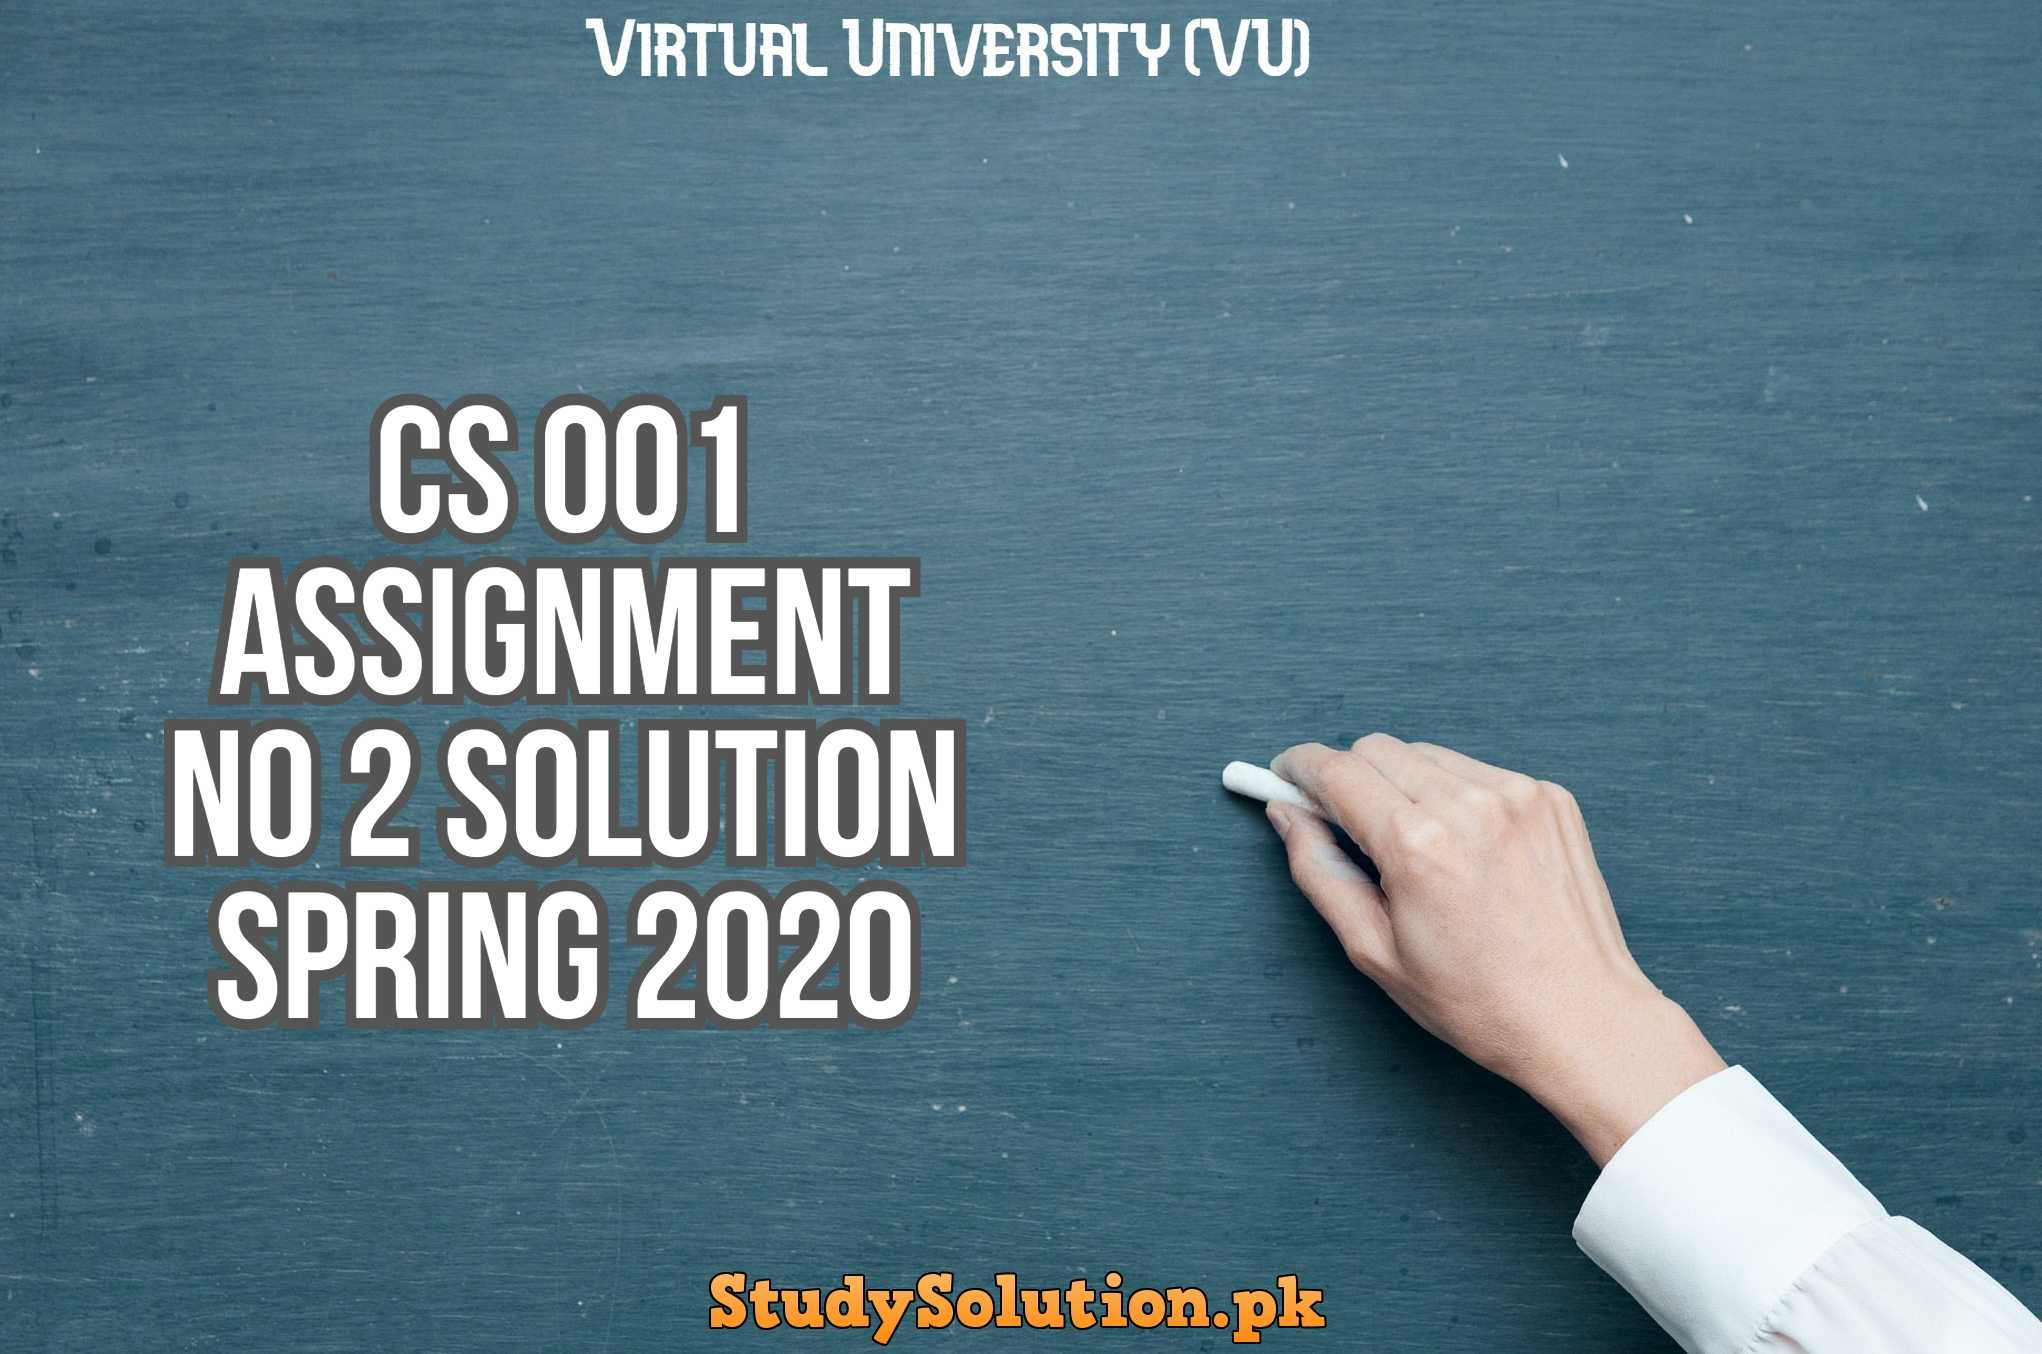 CS 001 Assignment No 2 Solution Spring 2020